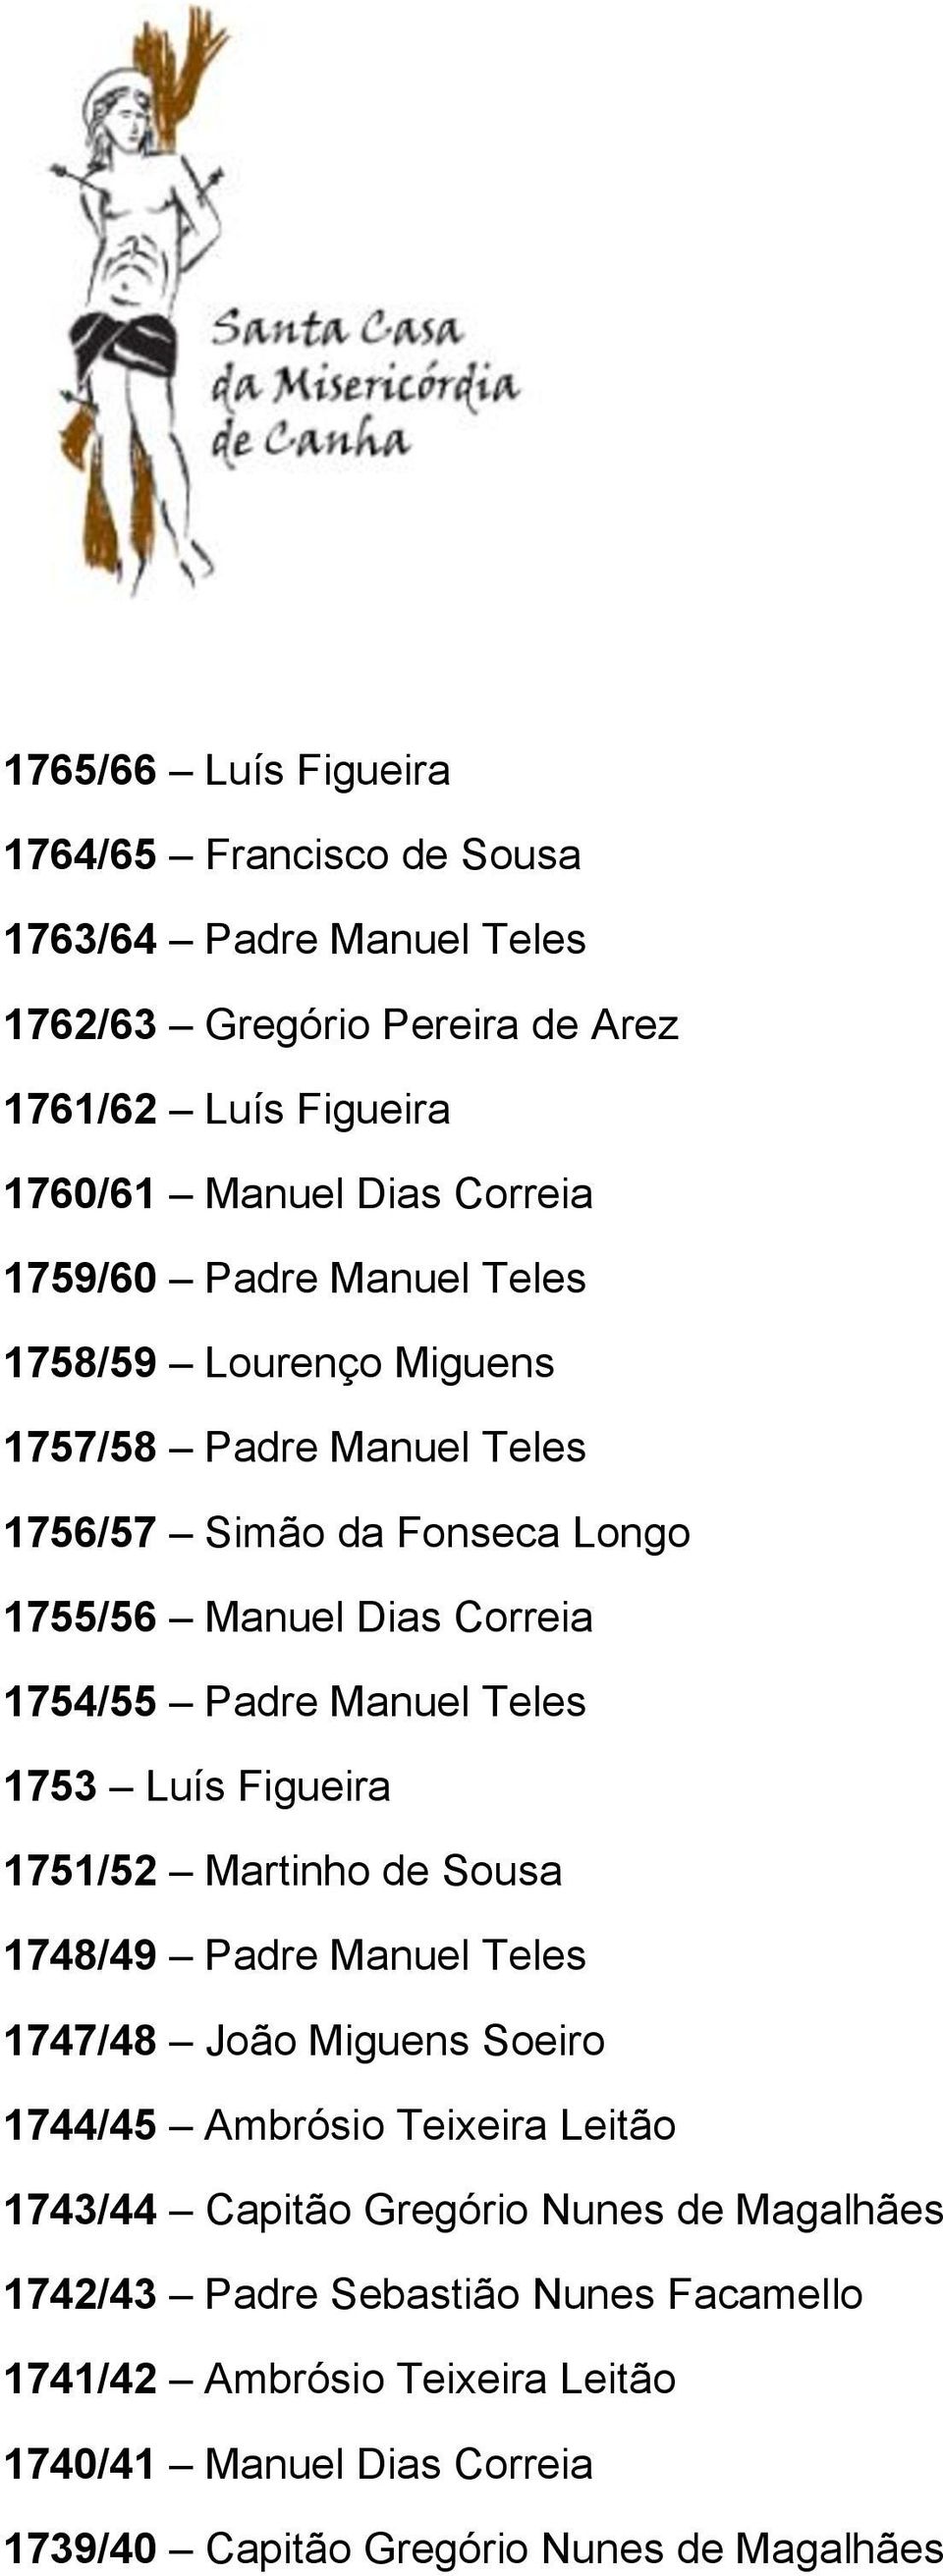 Teles 1753 Luís Figueira 1751/52 Martinho de Sousa 1748/49 Padre Manuel Teles 1747/48 João Miguens Soeiro 1744/45 Ambrósio Teixeira Leitão 1743/44 Capitão